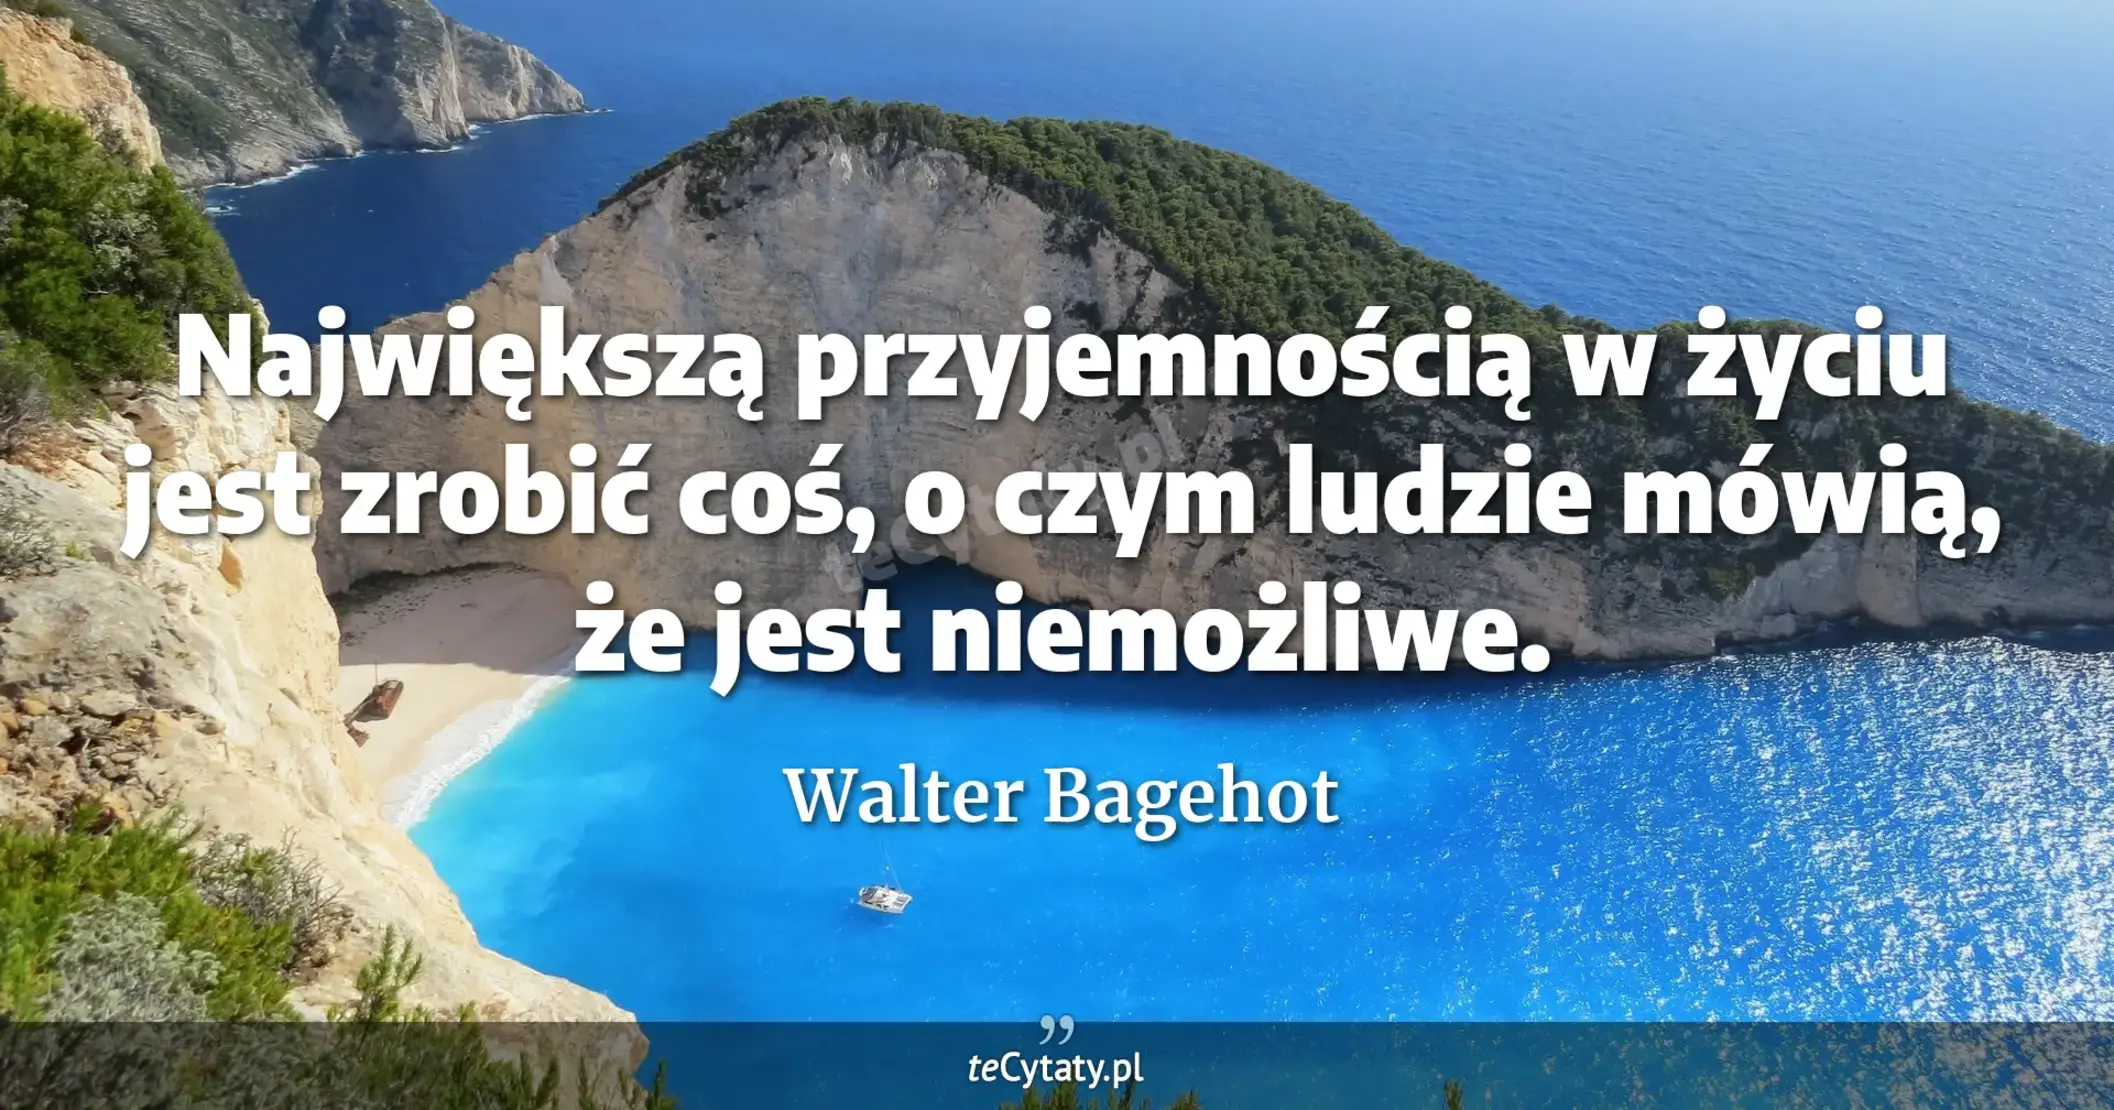 Największą przyjemnością w życiu jest zrobić coś, o czym ludzie mówią, że jest niemożliwe. - Walter Bagehot